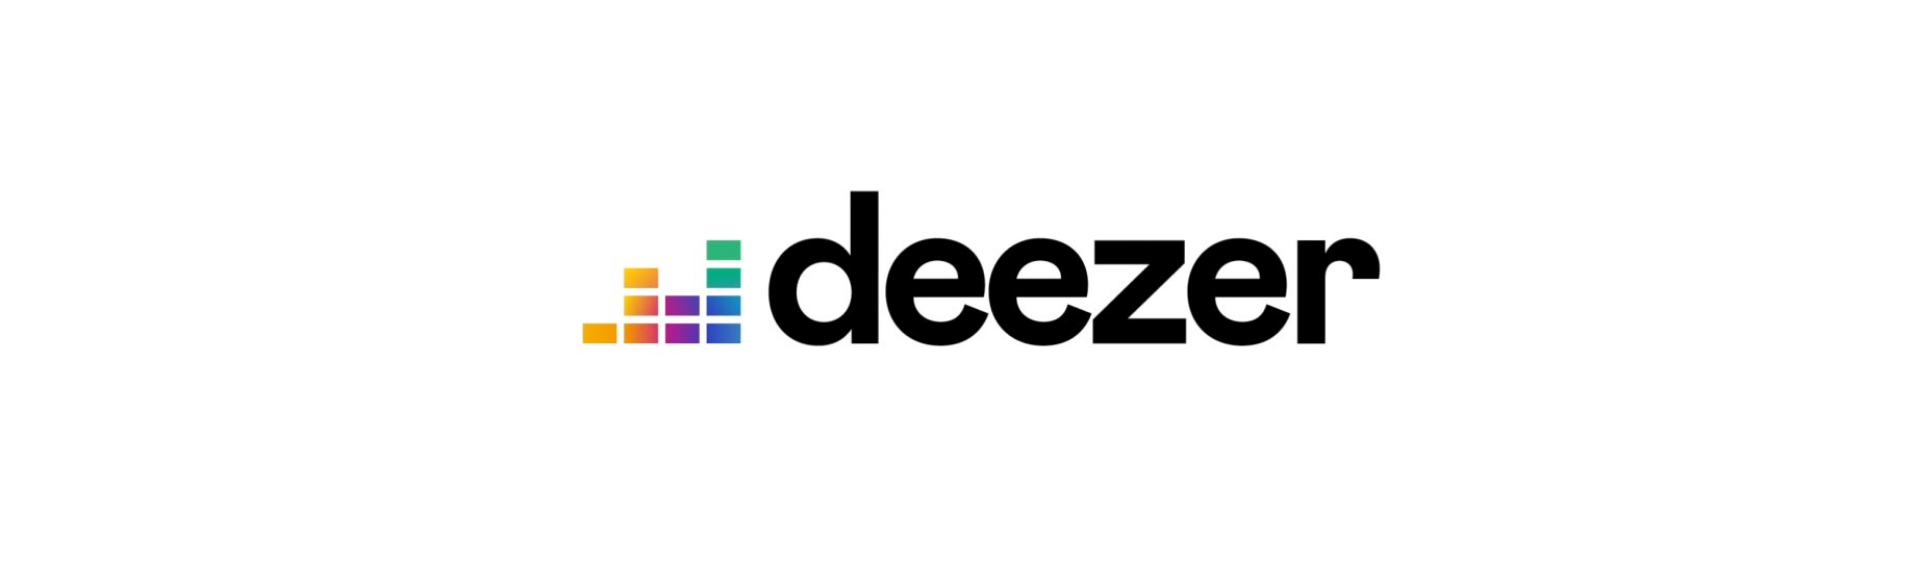 Dizzer. Deezer логотип. Дизер лого. Бейдж Deezer. Дизер для обложки.